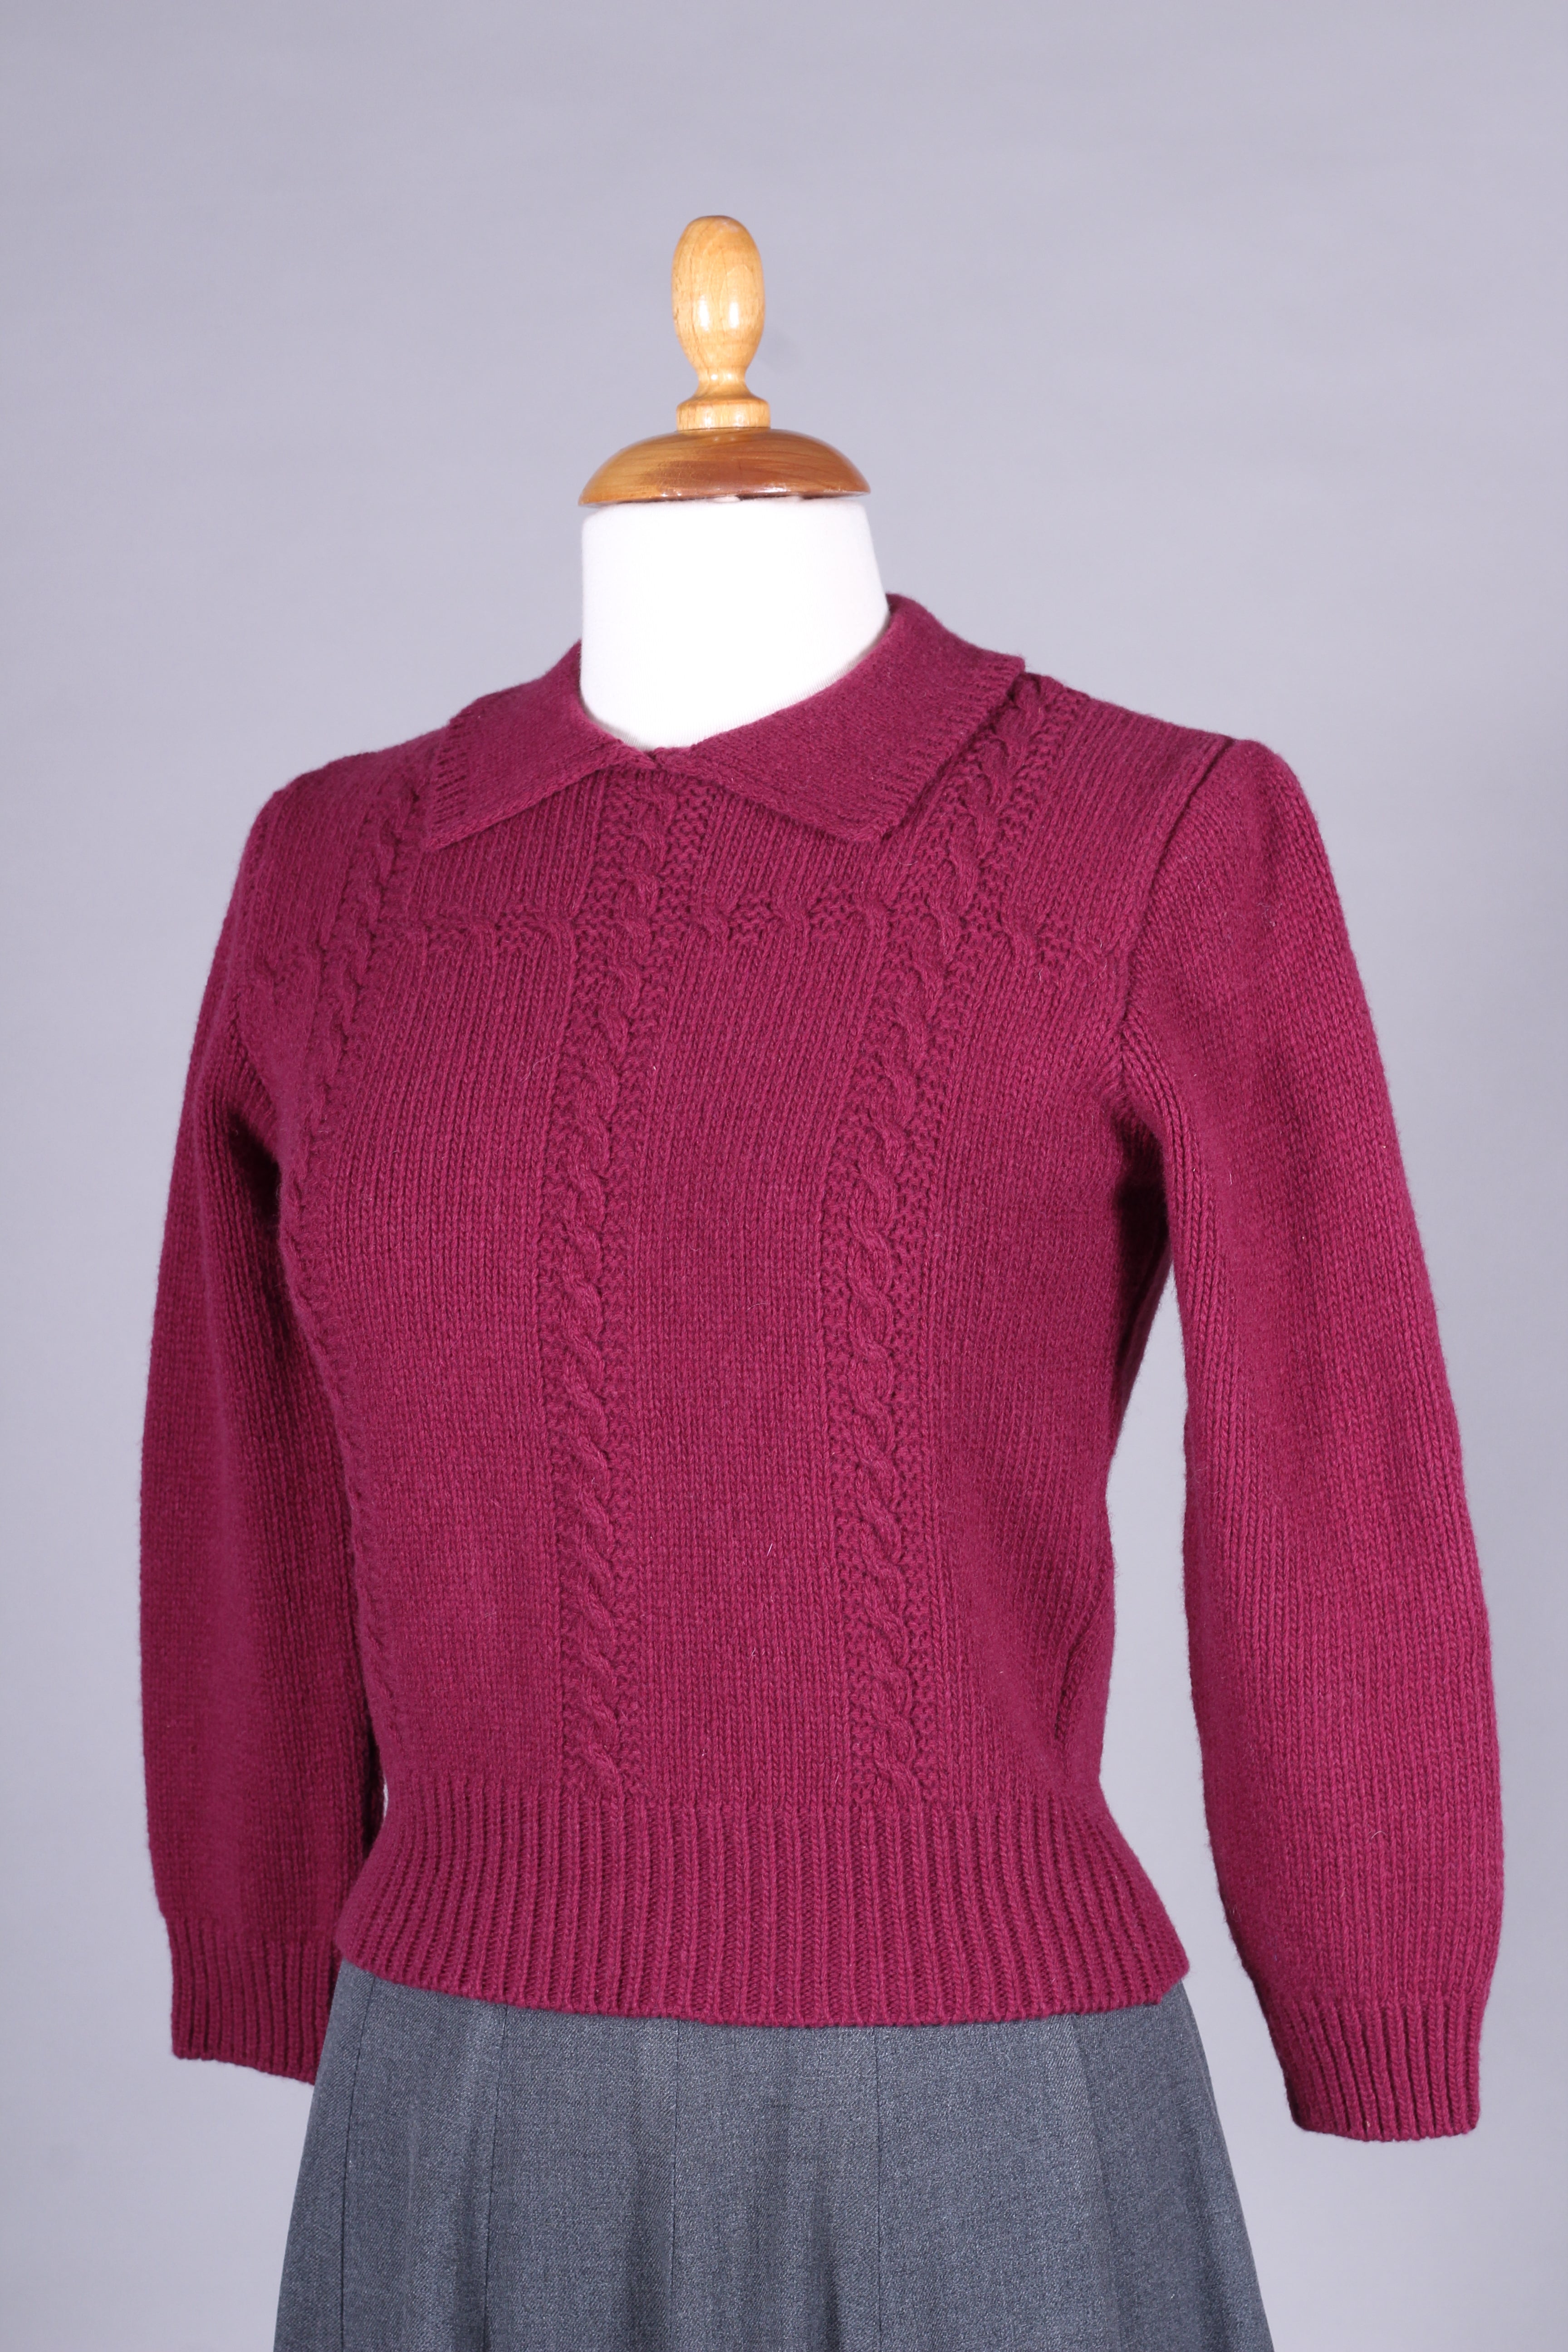 1940’er / 1950’er vintage style pullover - Bordeaux rød - Gertrud